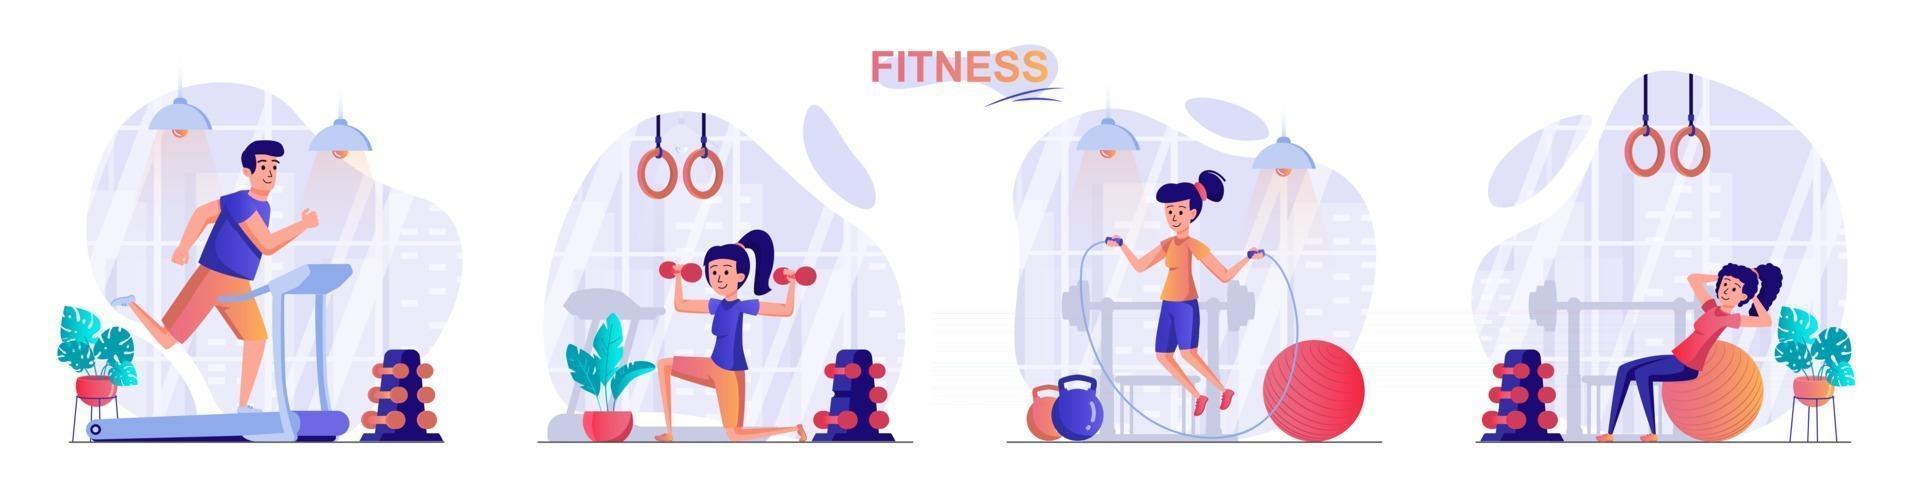 fitness koncept scener vektor